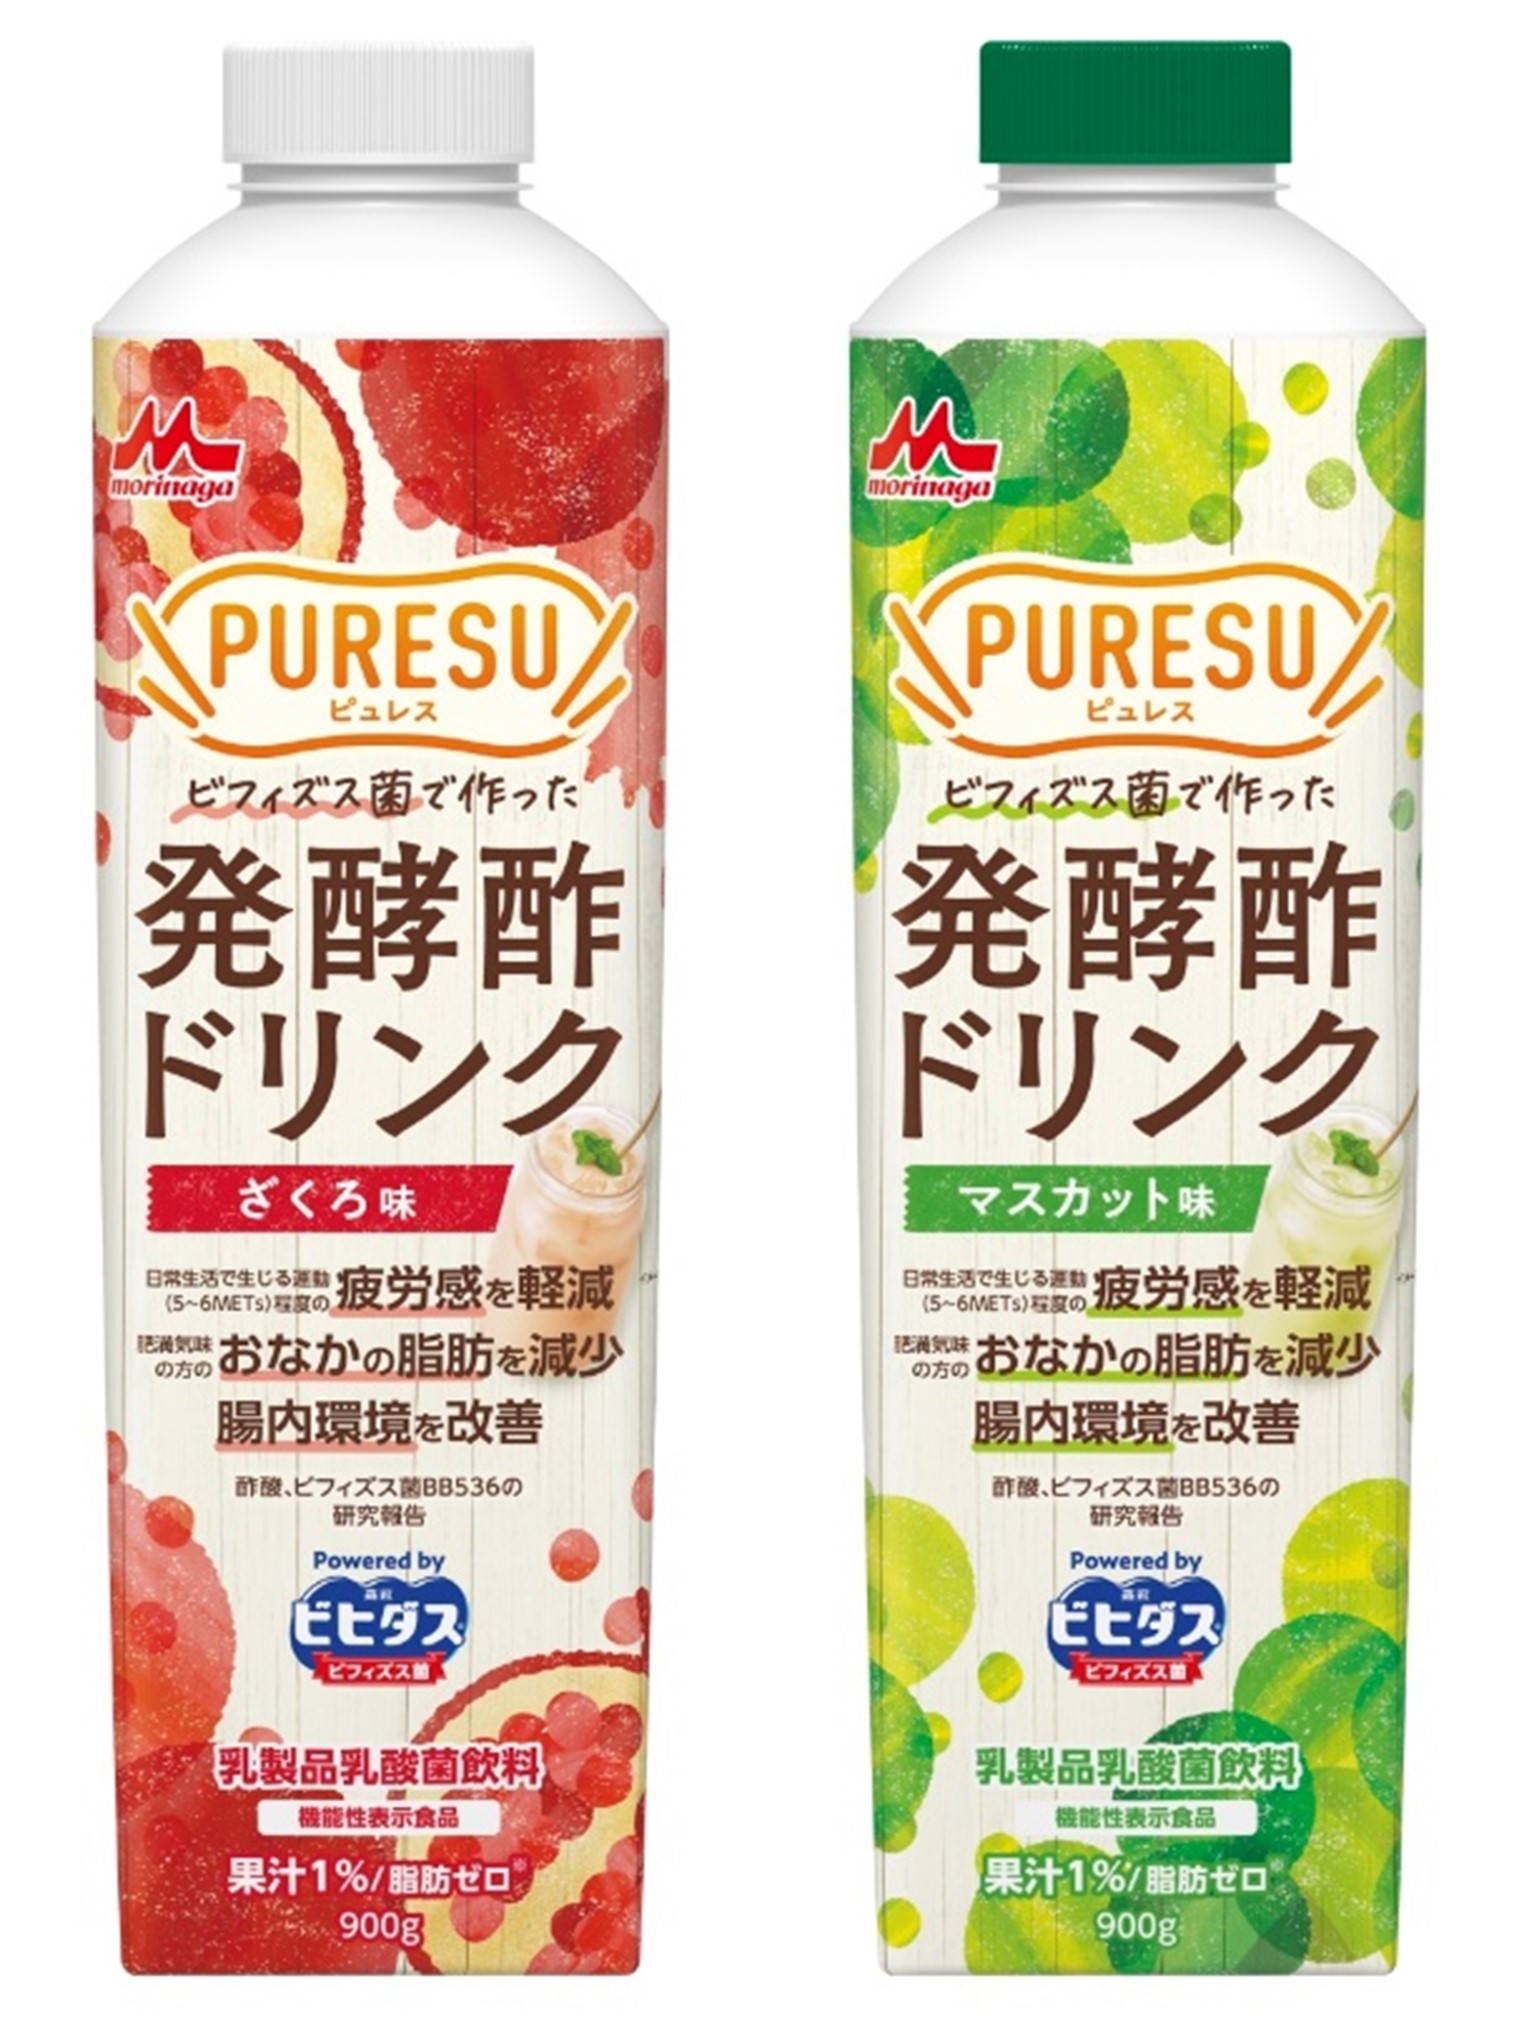 （商品画像）「PURESU(ピュレス) 発酵酢ドリンク ざくろ味、 マスカット味」